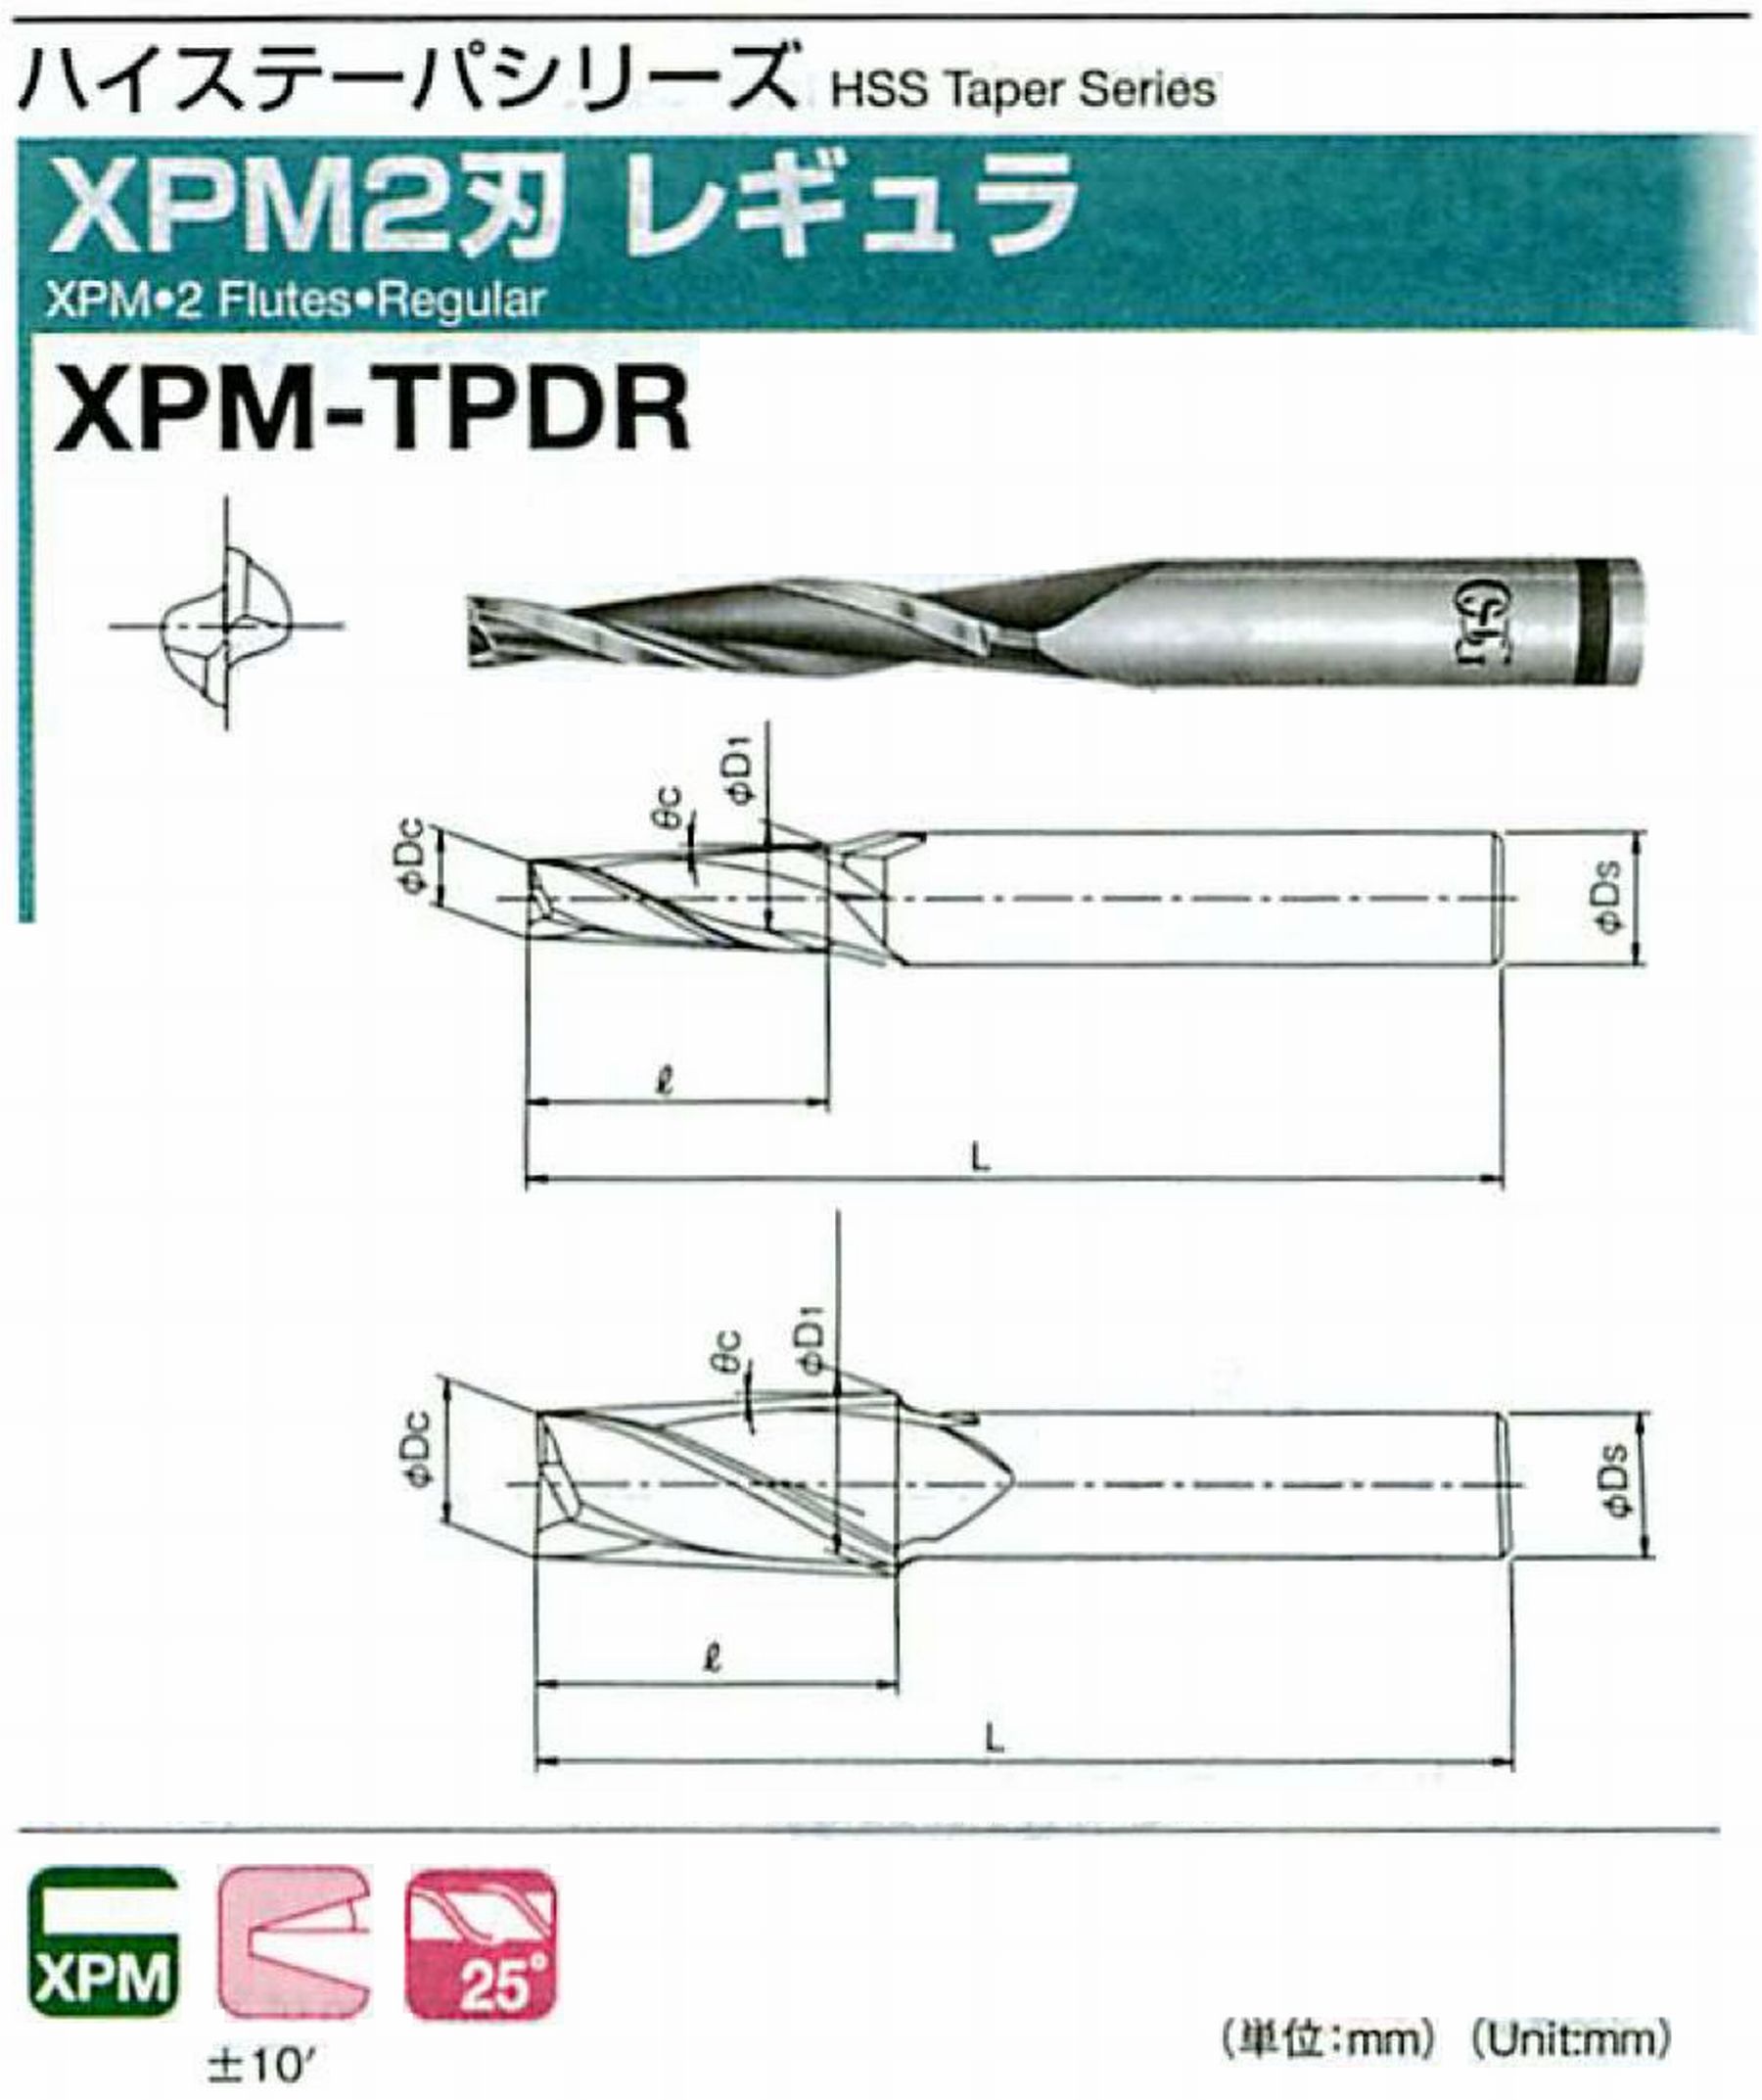 オーエスジー/OSG XPM2刃 レギュラ XPM-TPDR 外径×刃部テーパ半角6×2.5° 全長92 刃長42 シャンク径10mm 大端径9.67